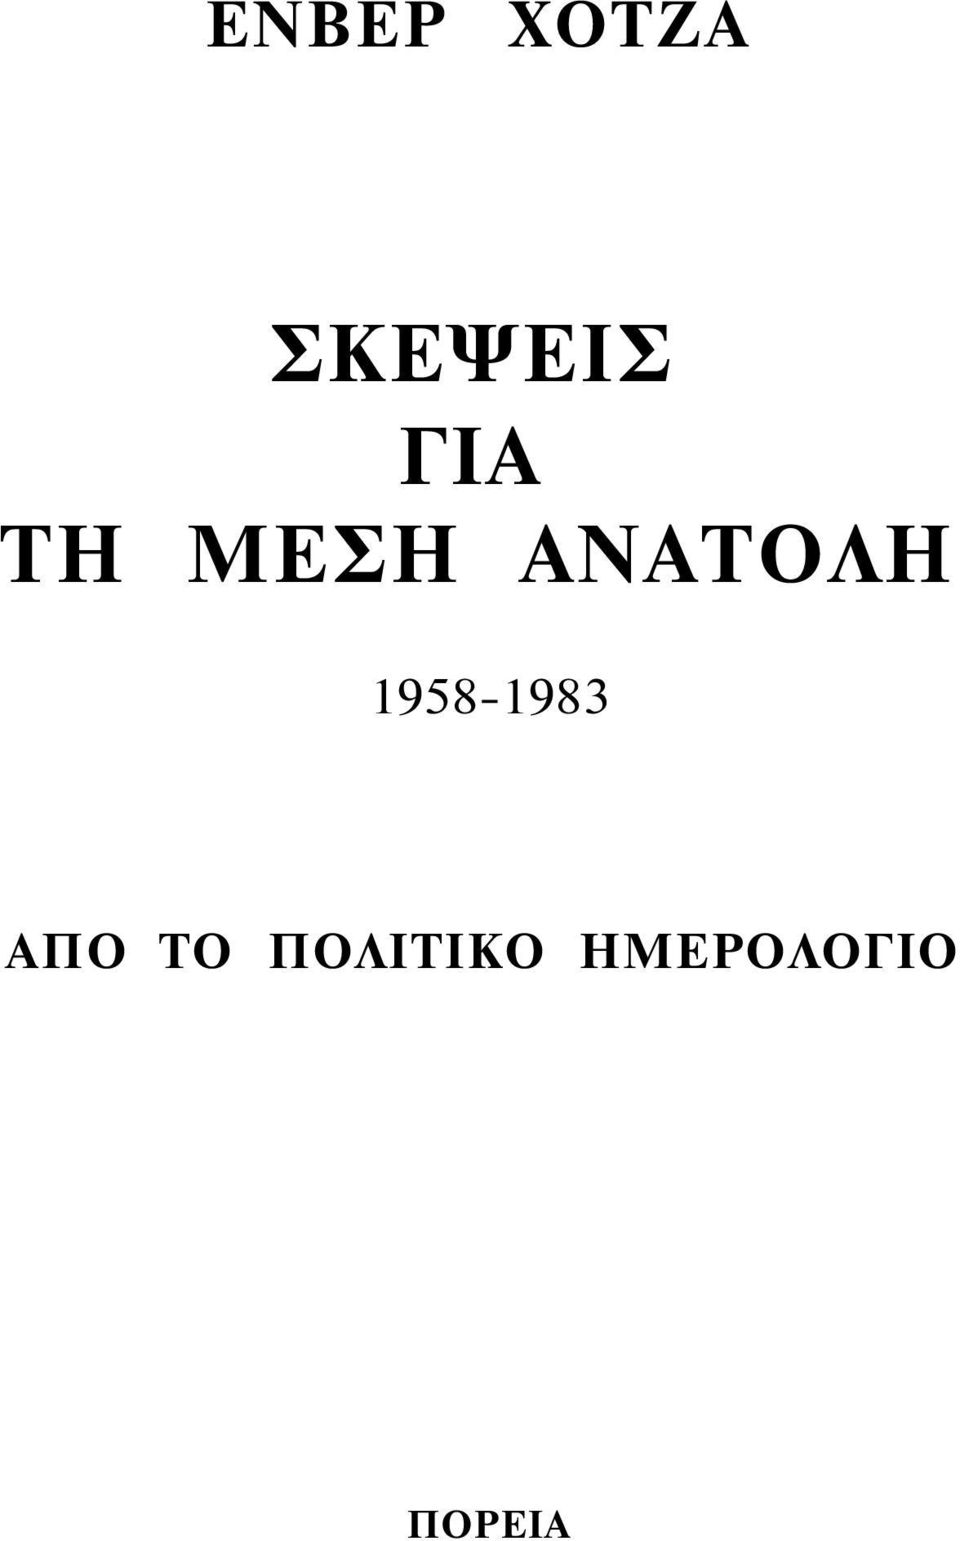 1958-1983 ΑΠΟ ΤΟ